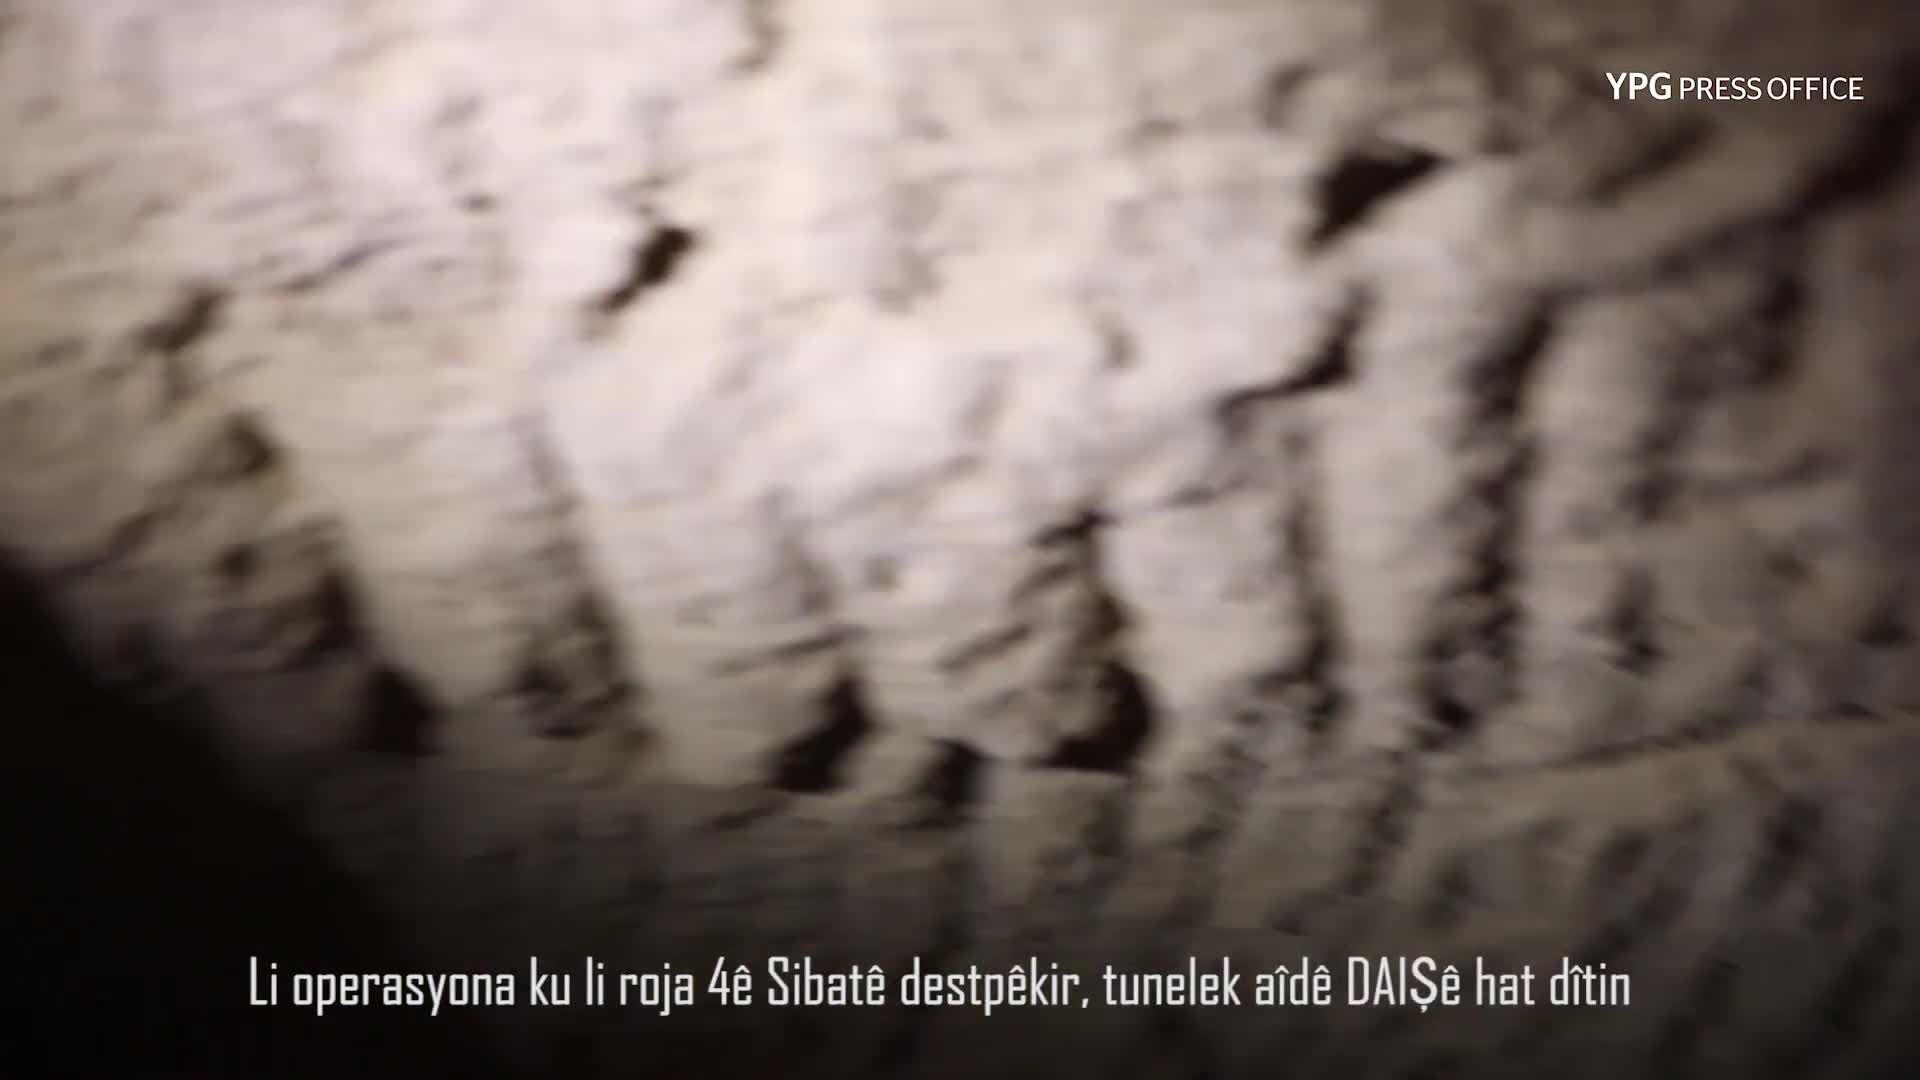 Clip:Bí mật bất ngờ trong đường hầm sâu hun hút của khủng bố mới được phát hiện ở Syria